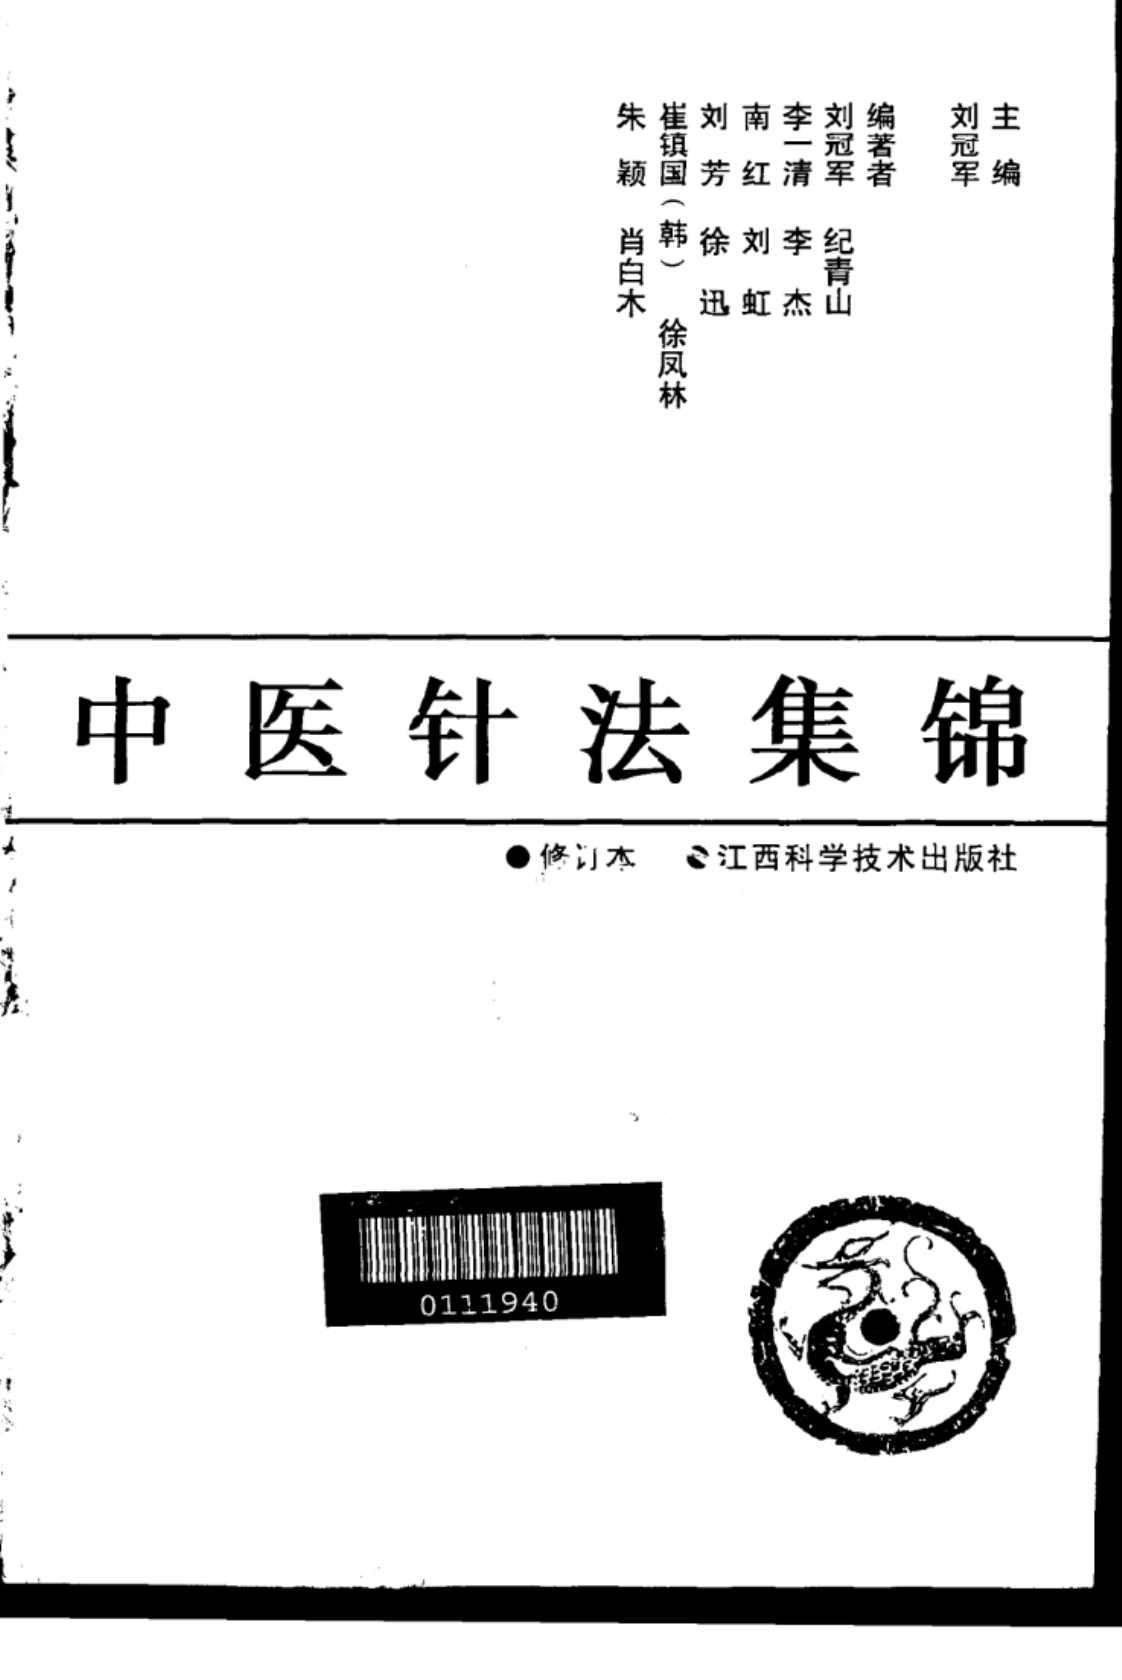 [中医针法集锦(修订本)][刘冠军(编著)]高清PDF电子书下载